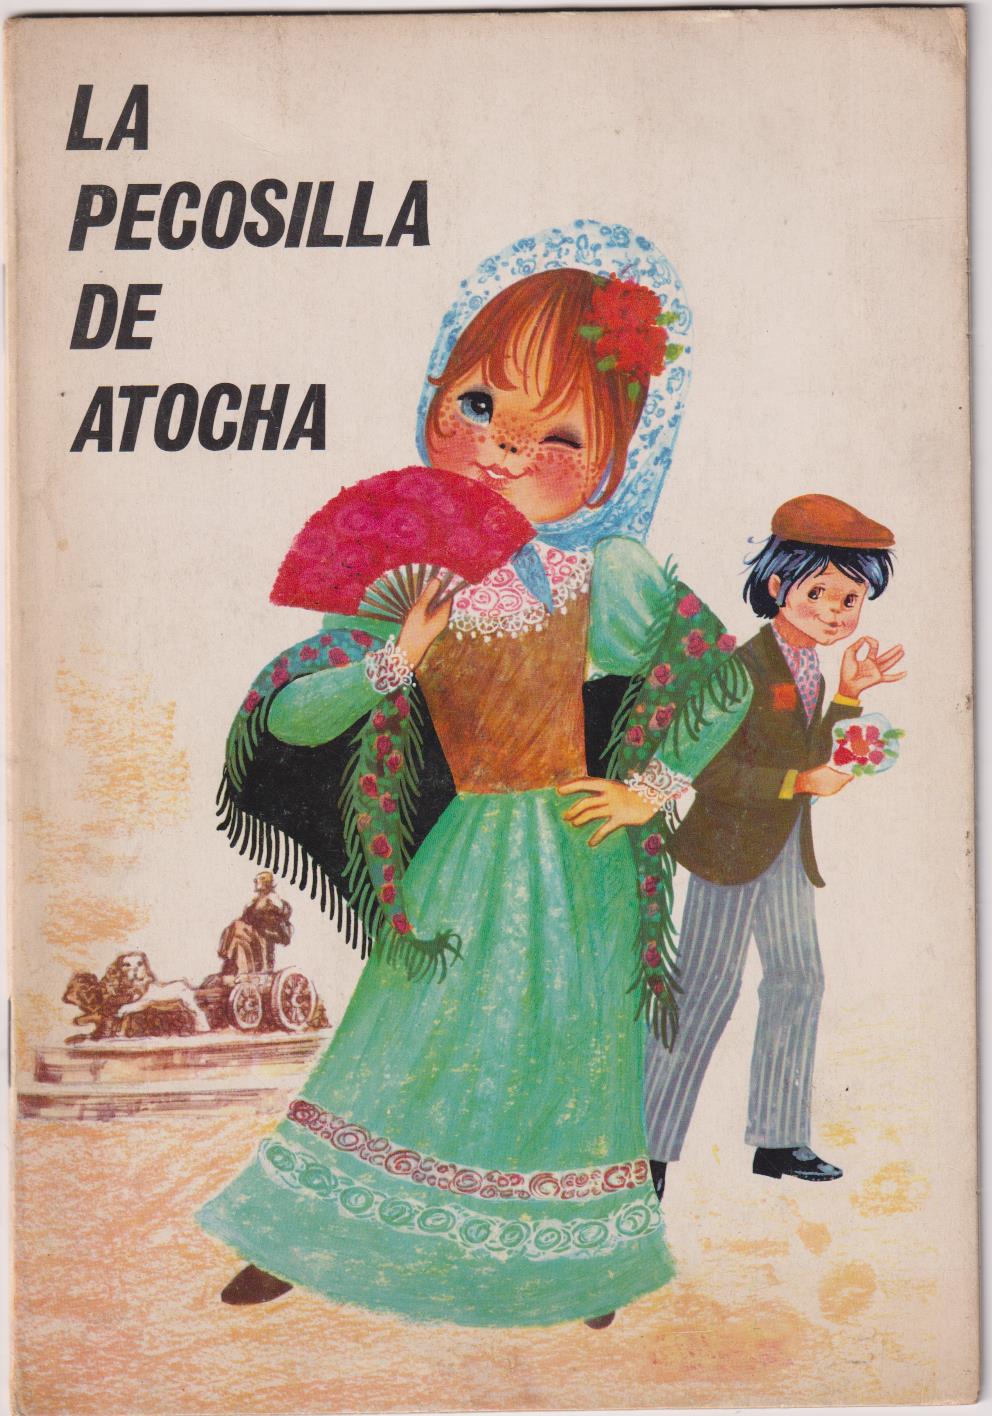 La Pecosilla de Atocha (24x16,5) 16 páginas. Colección Trajes Danzas y Costumbres nº 1. 1970